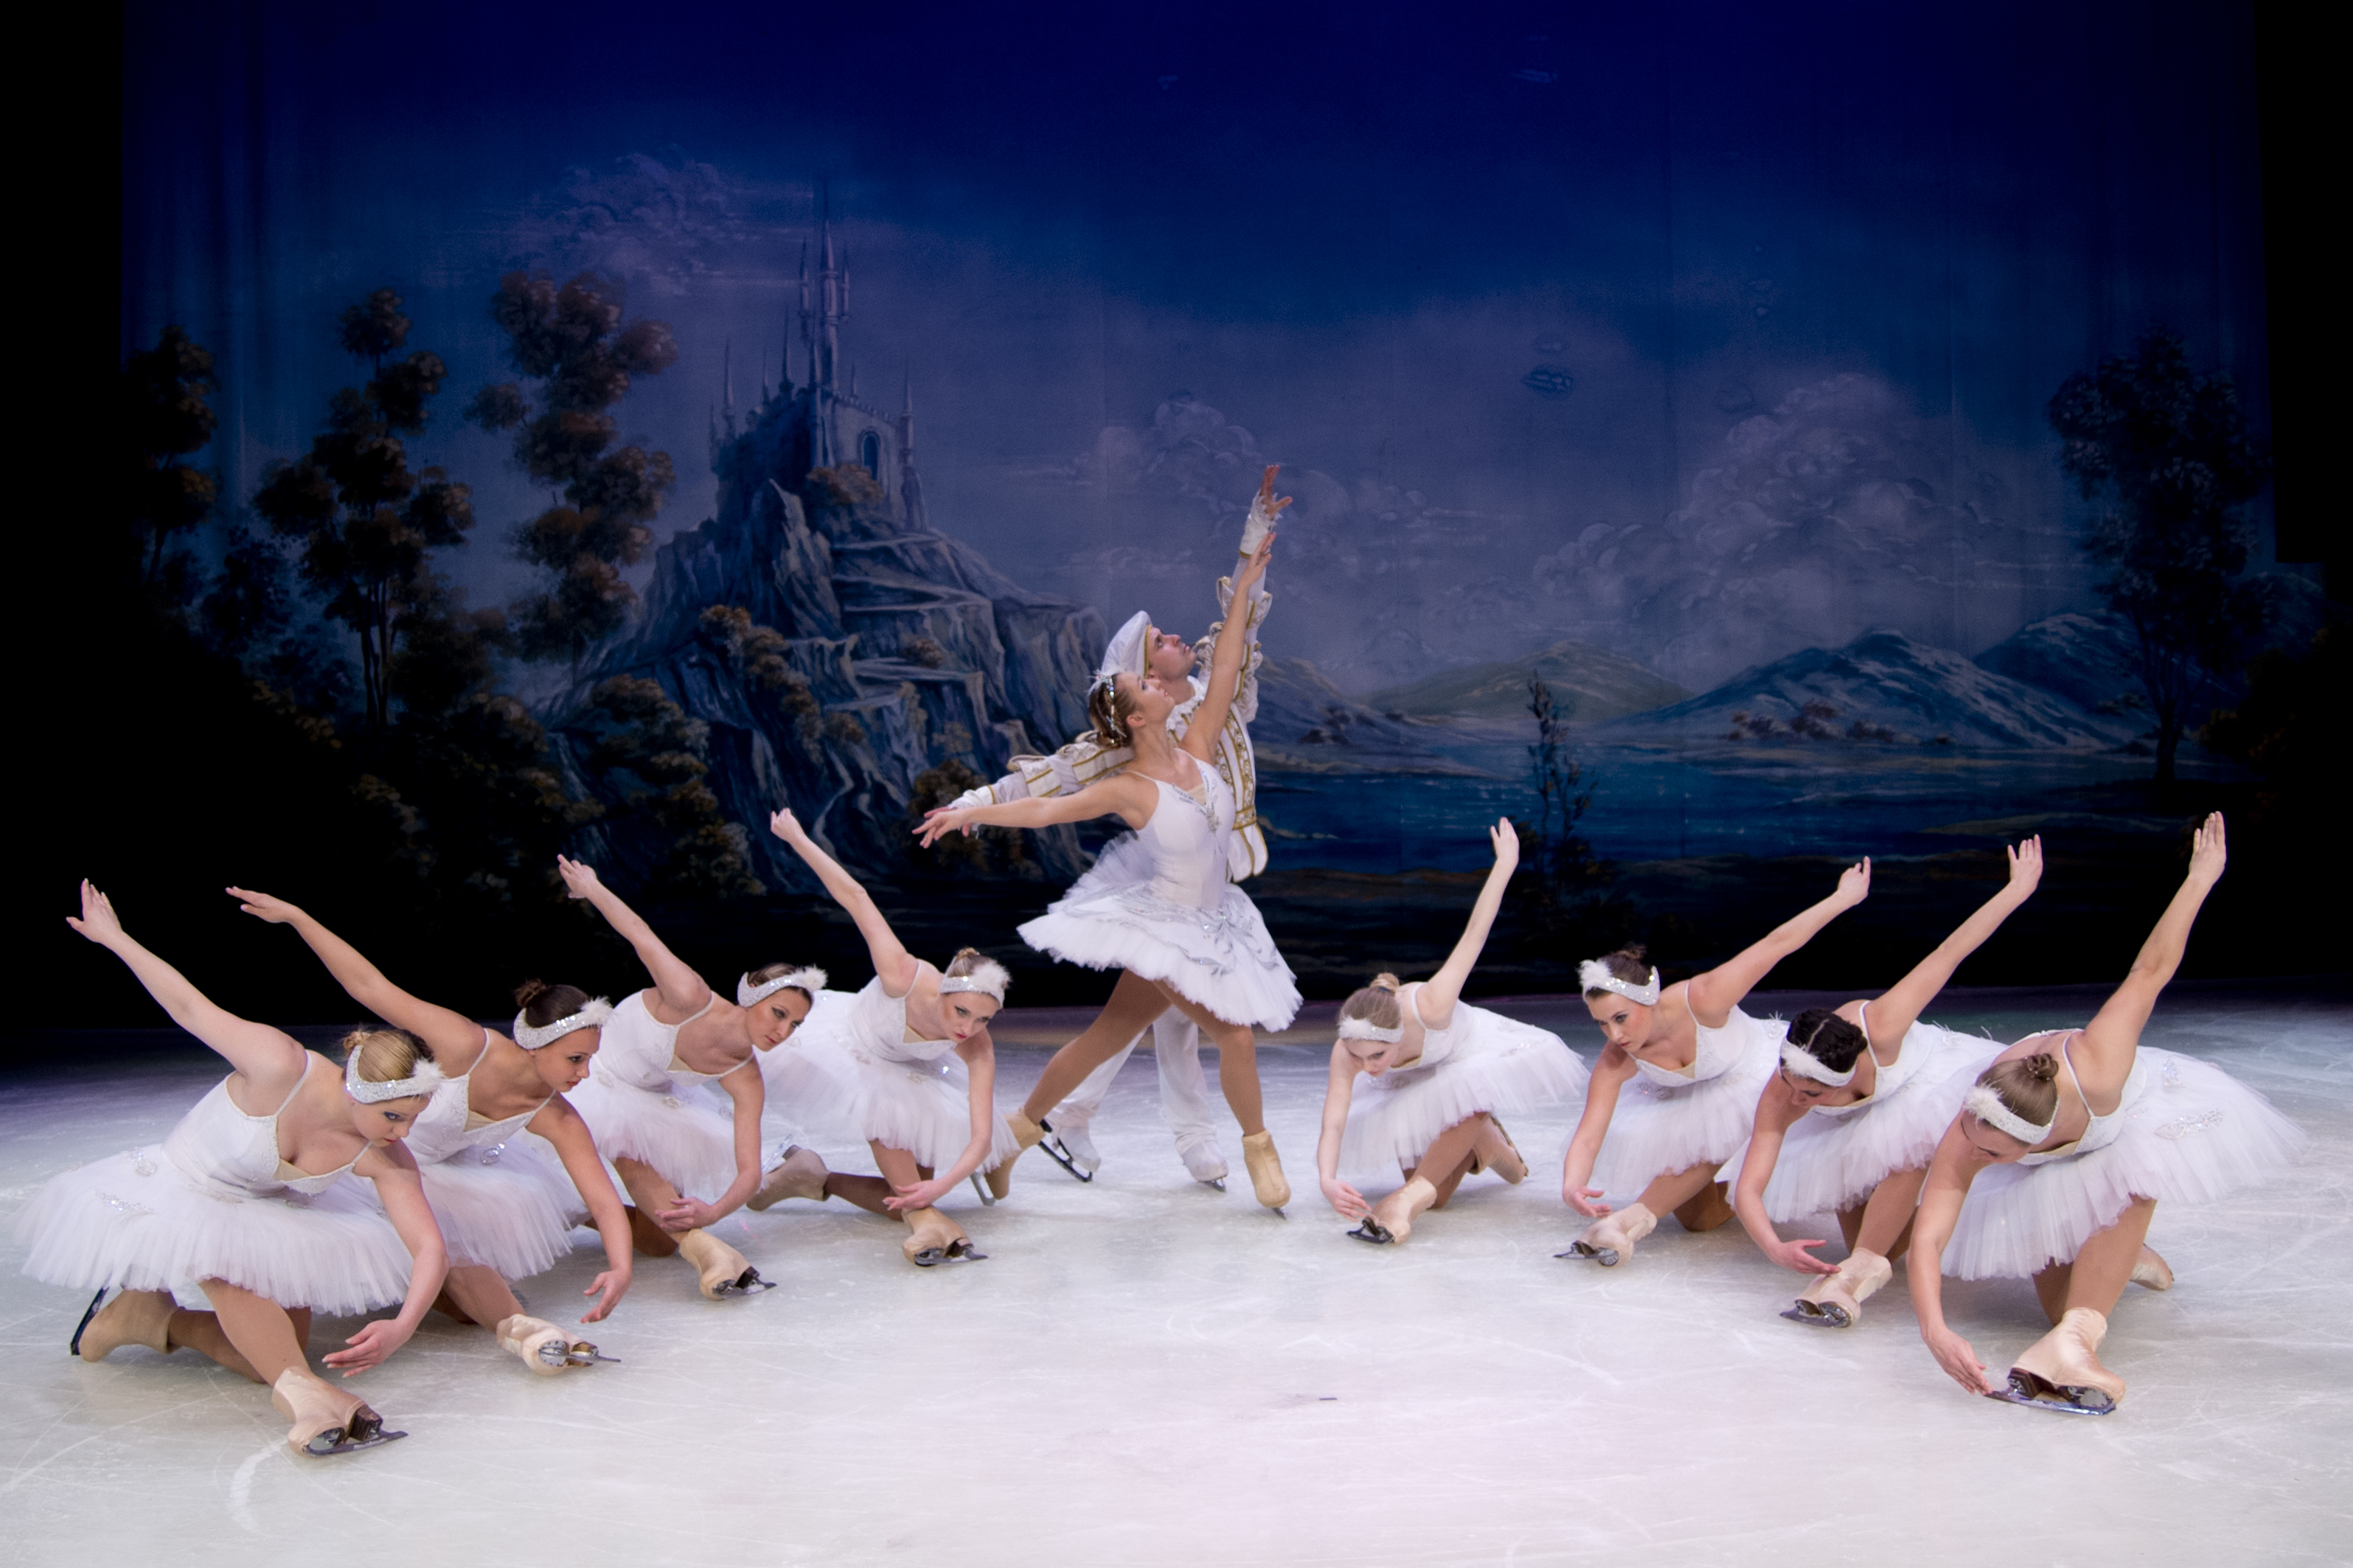  Curitiba recebe apresentação inédito de ballet no gelo